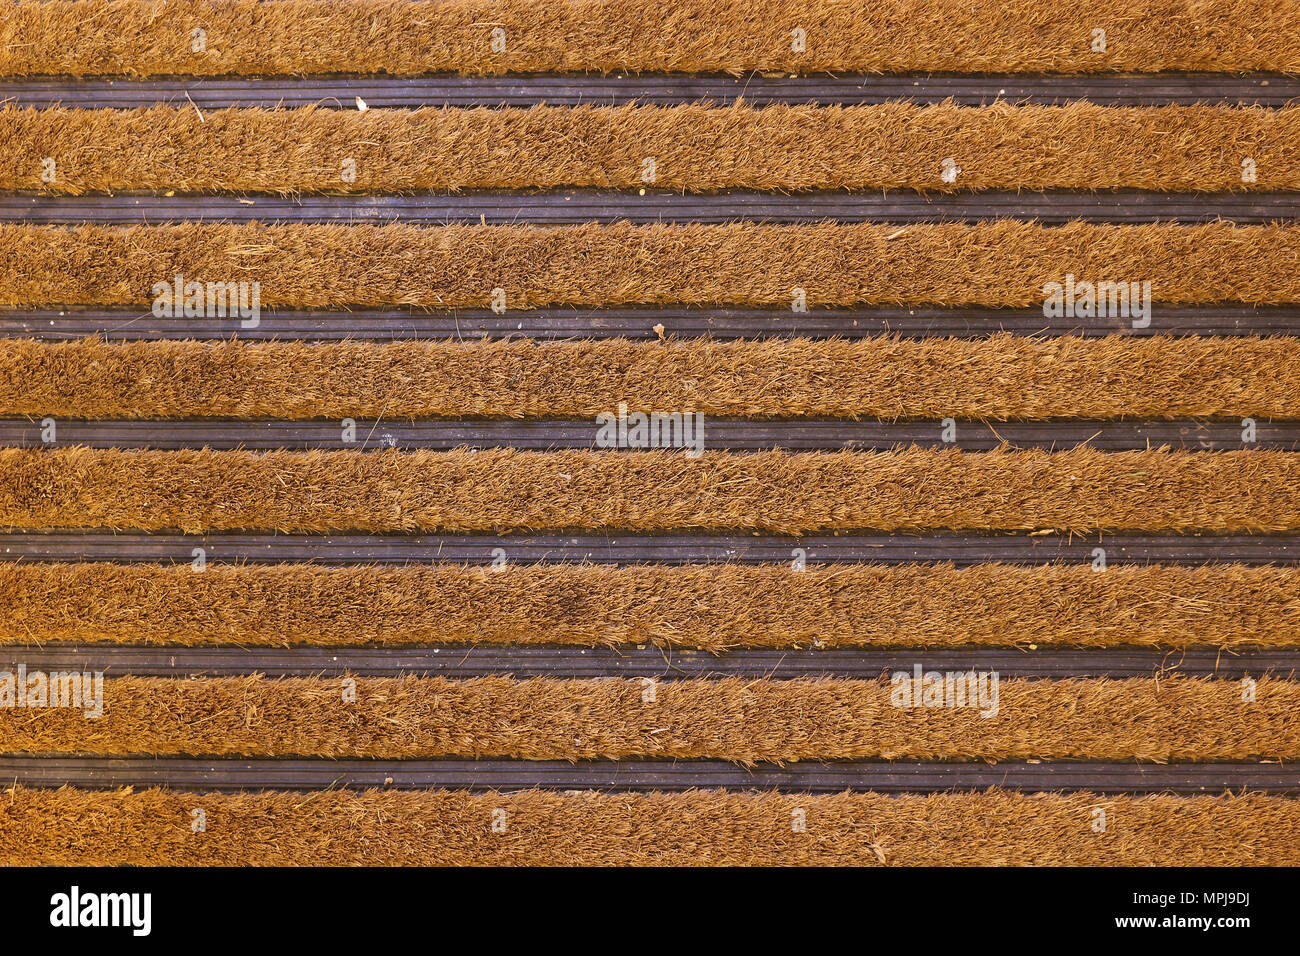 Brown coconut fibre striped door mat Stock Photo